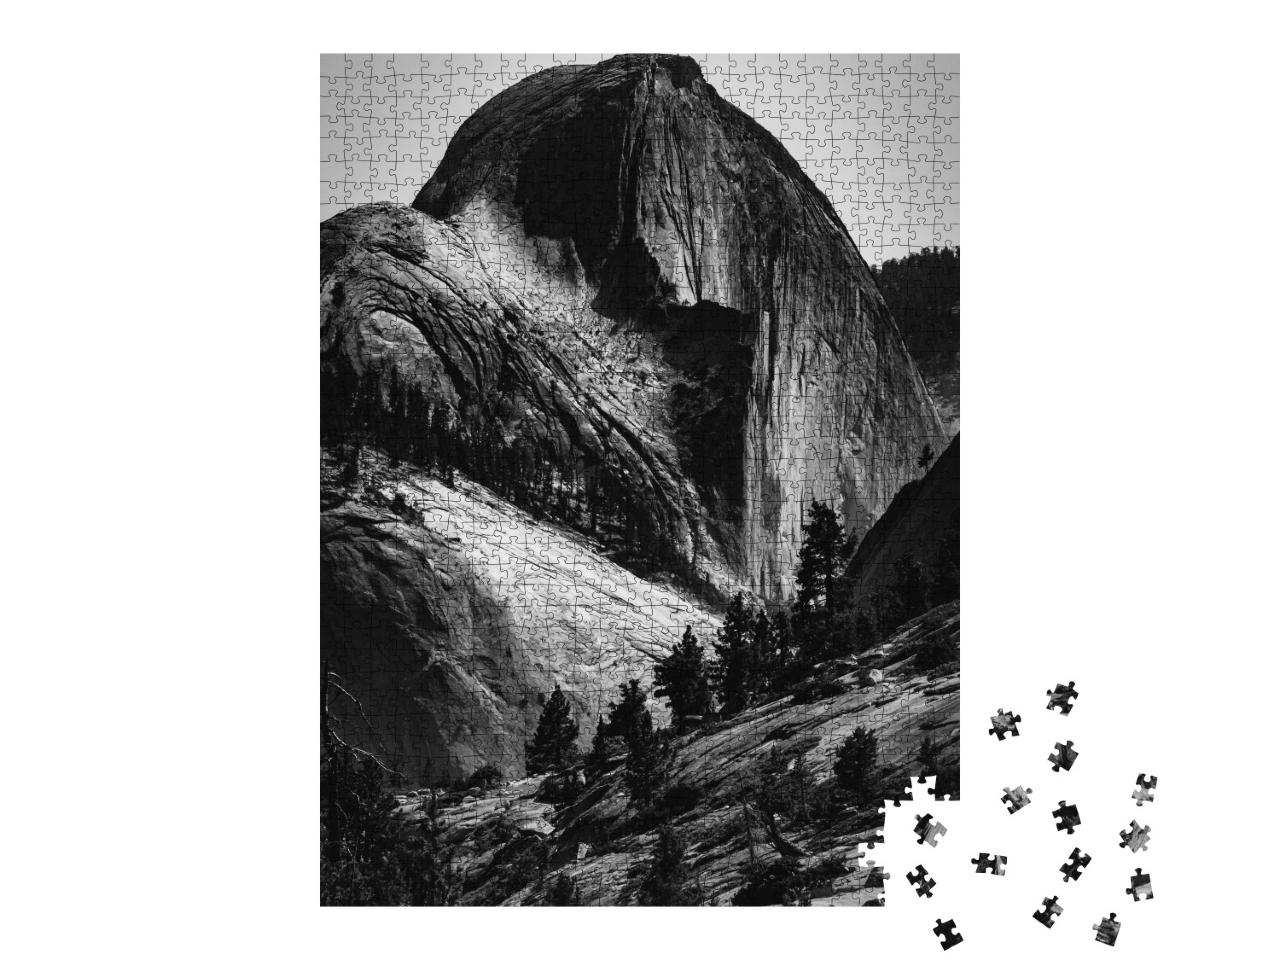 Puzzle de 1000 pièces « Half Dome dans le parc national de Yosemite, noir et blanc »